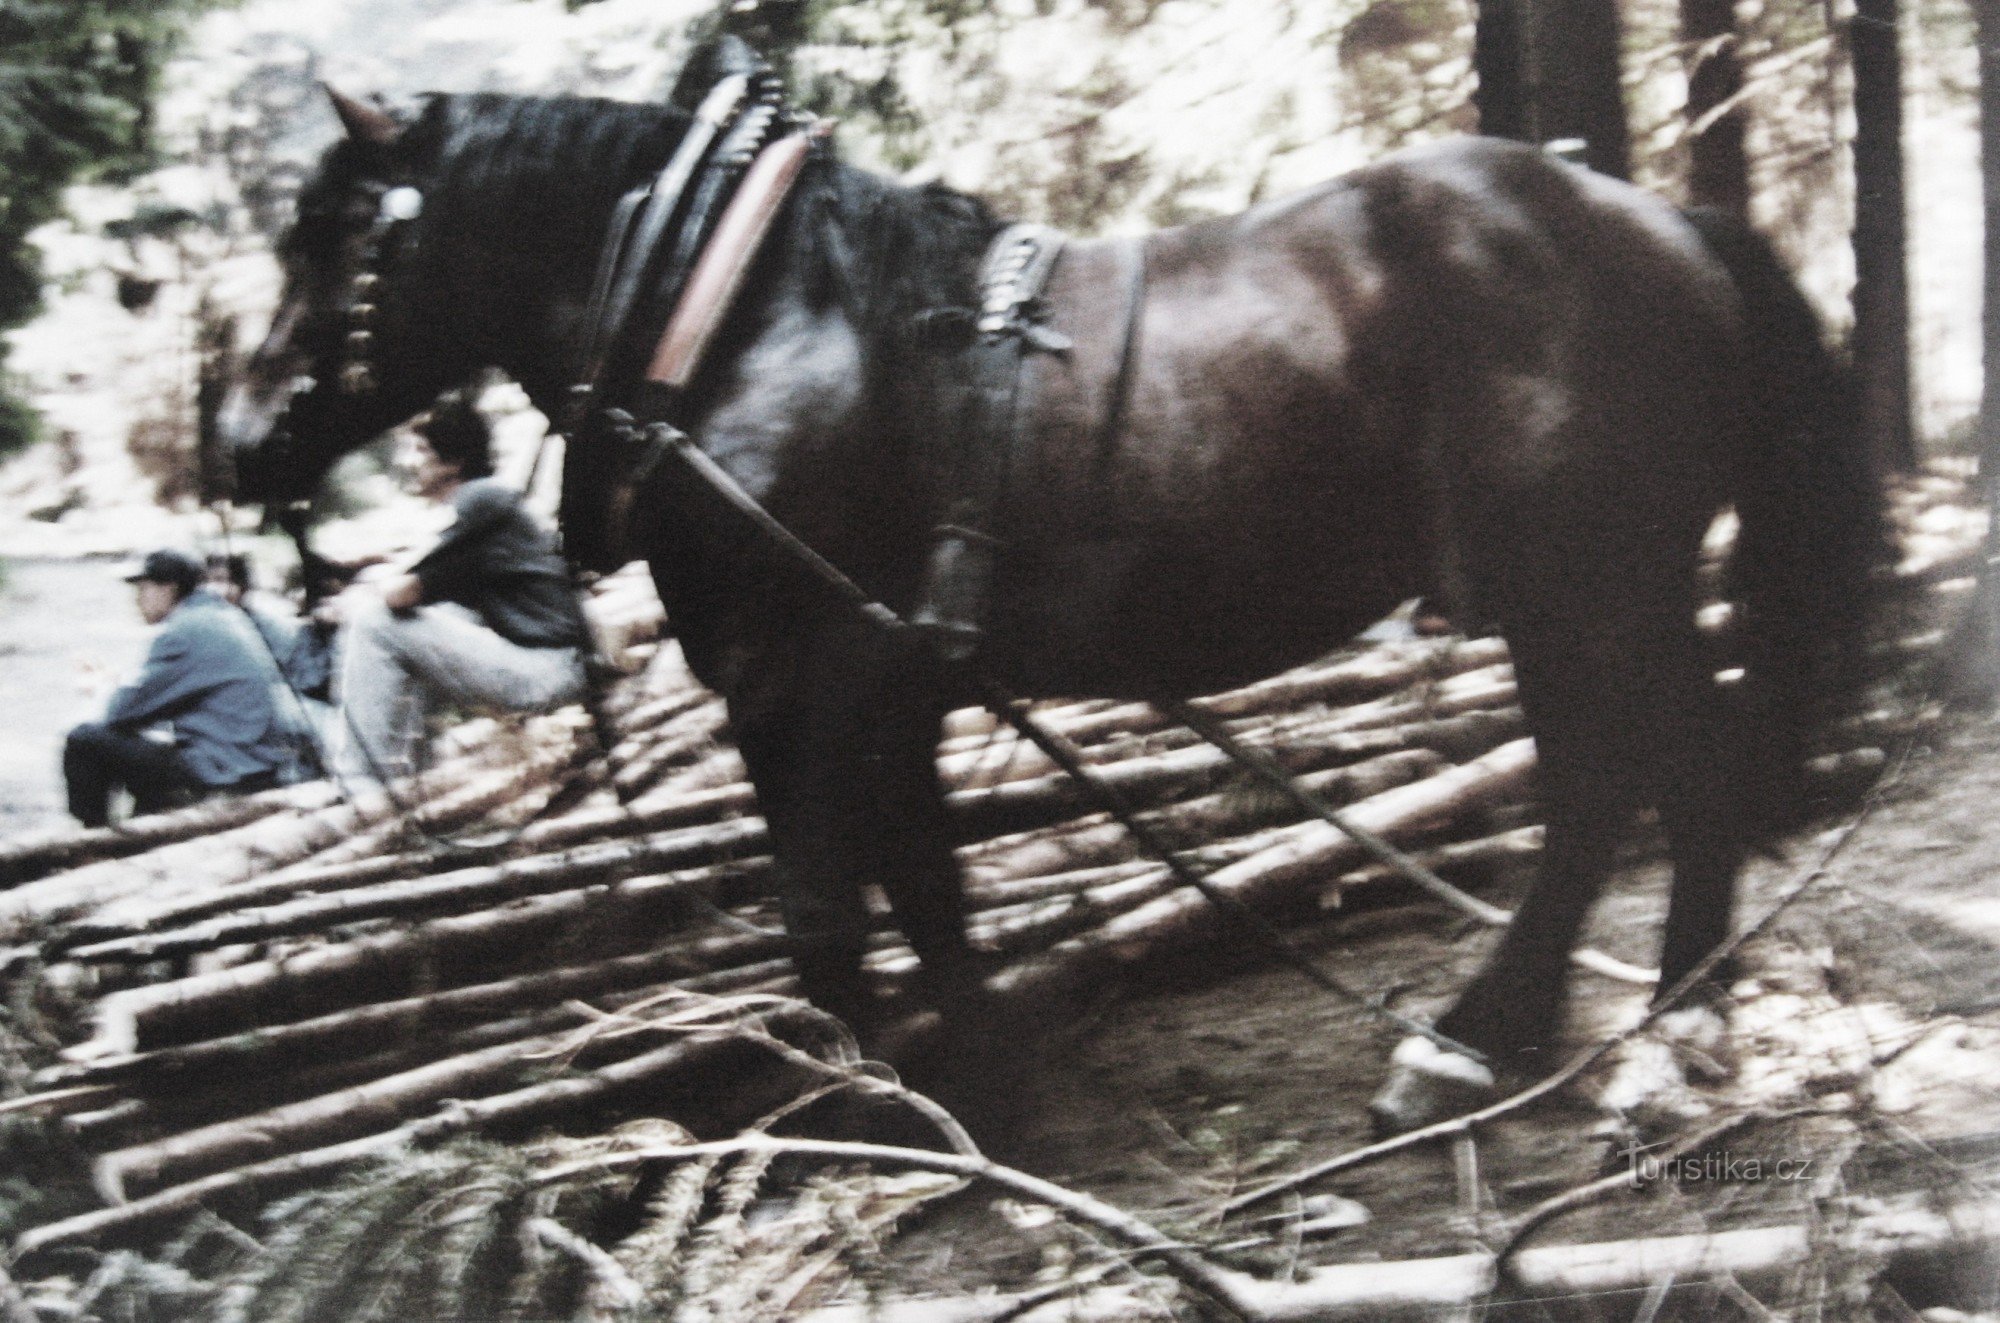 Black horse under Ožiňák